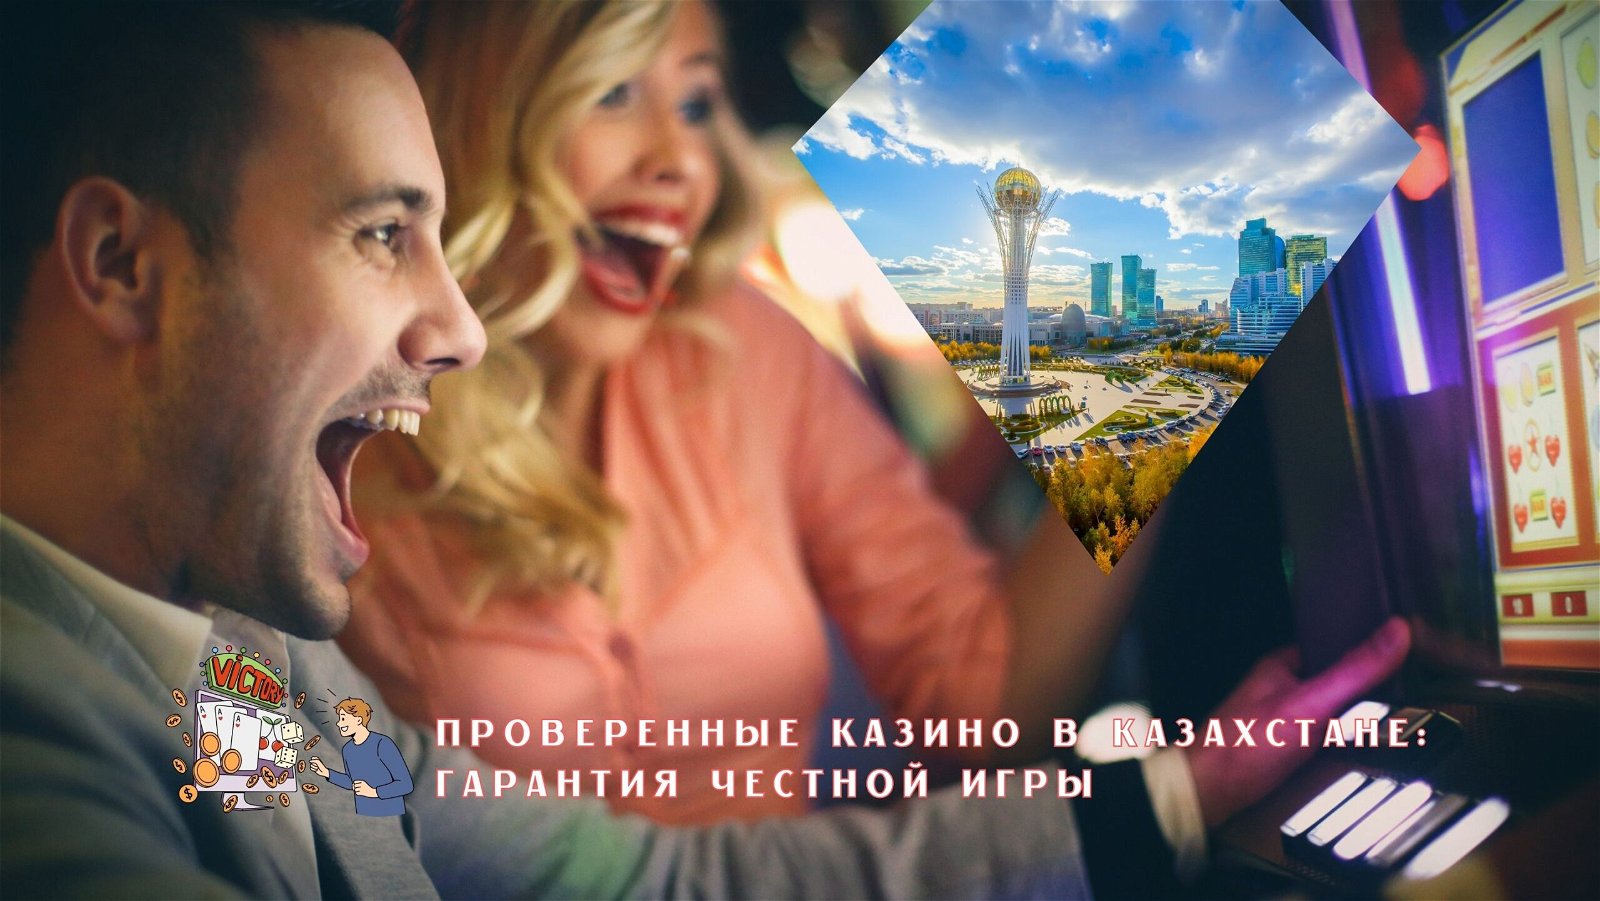 Честные онлайн казино с выплатами в Казахстане